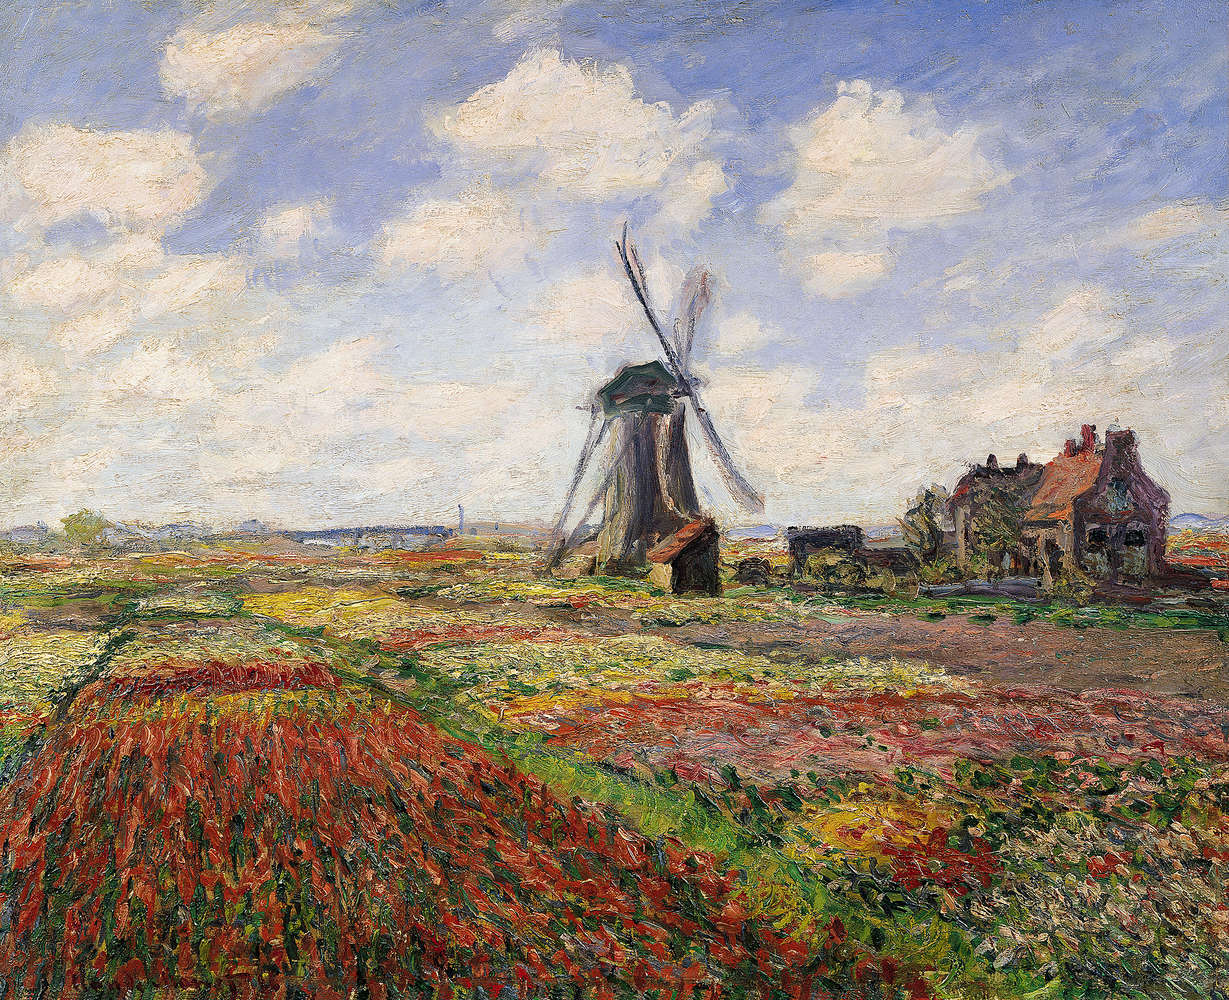             Muurschildering "Tulpenvelden met de molen van Rijnsburg" van Claude Monet
        